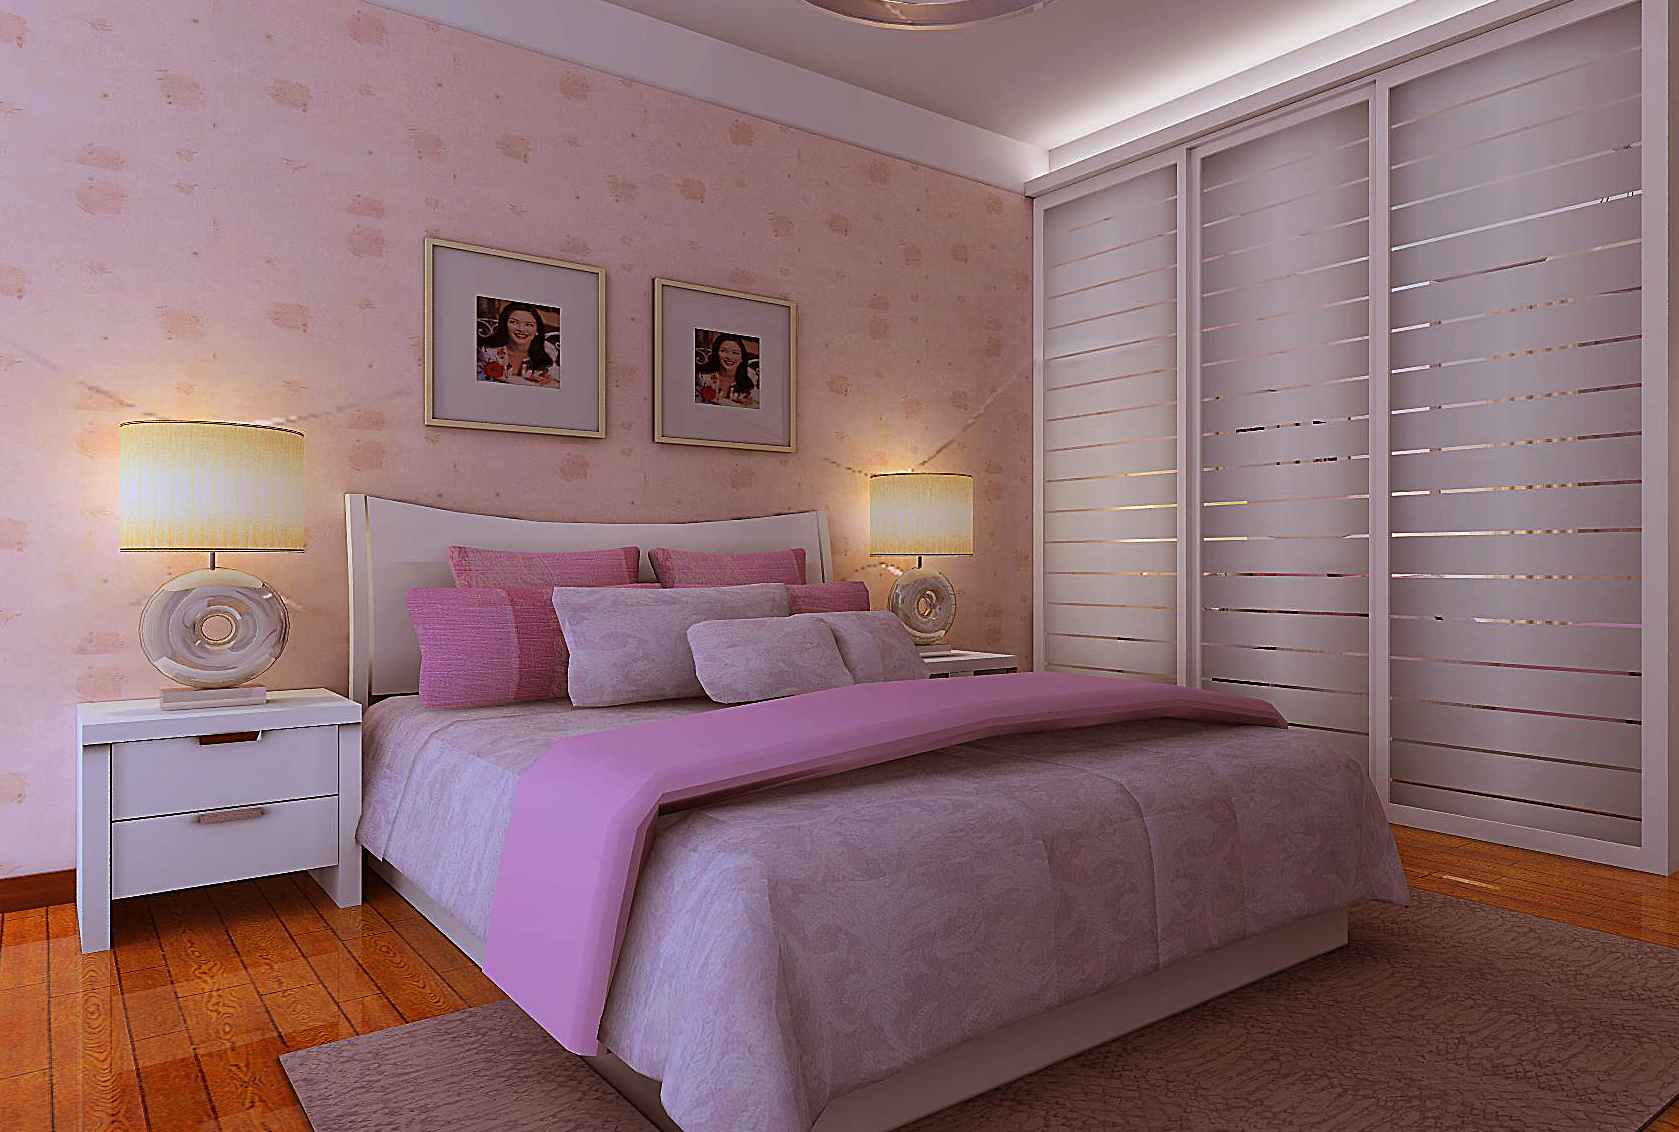 简约 二居 白领 收纳 旧房改造 卧室图片来自富有世纪装饰河南公司在小清新的分享